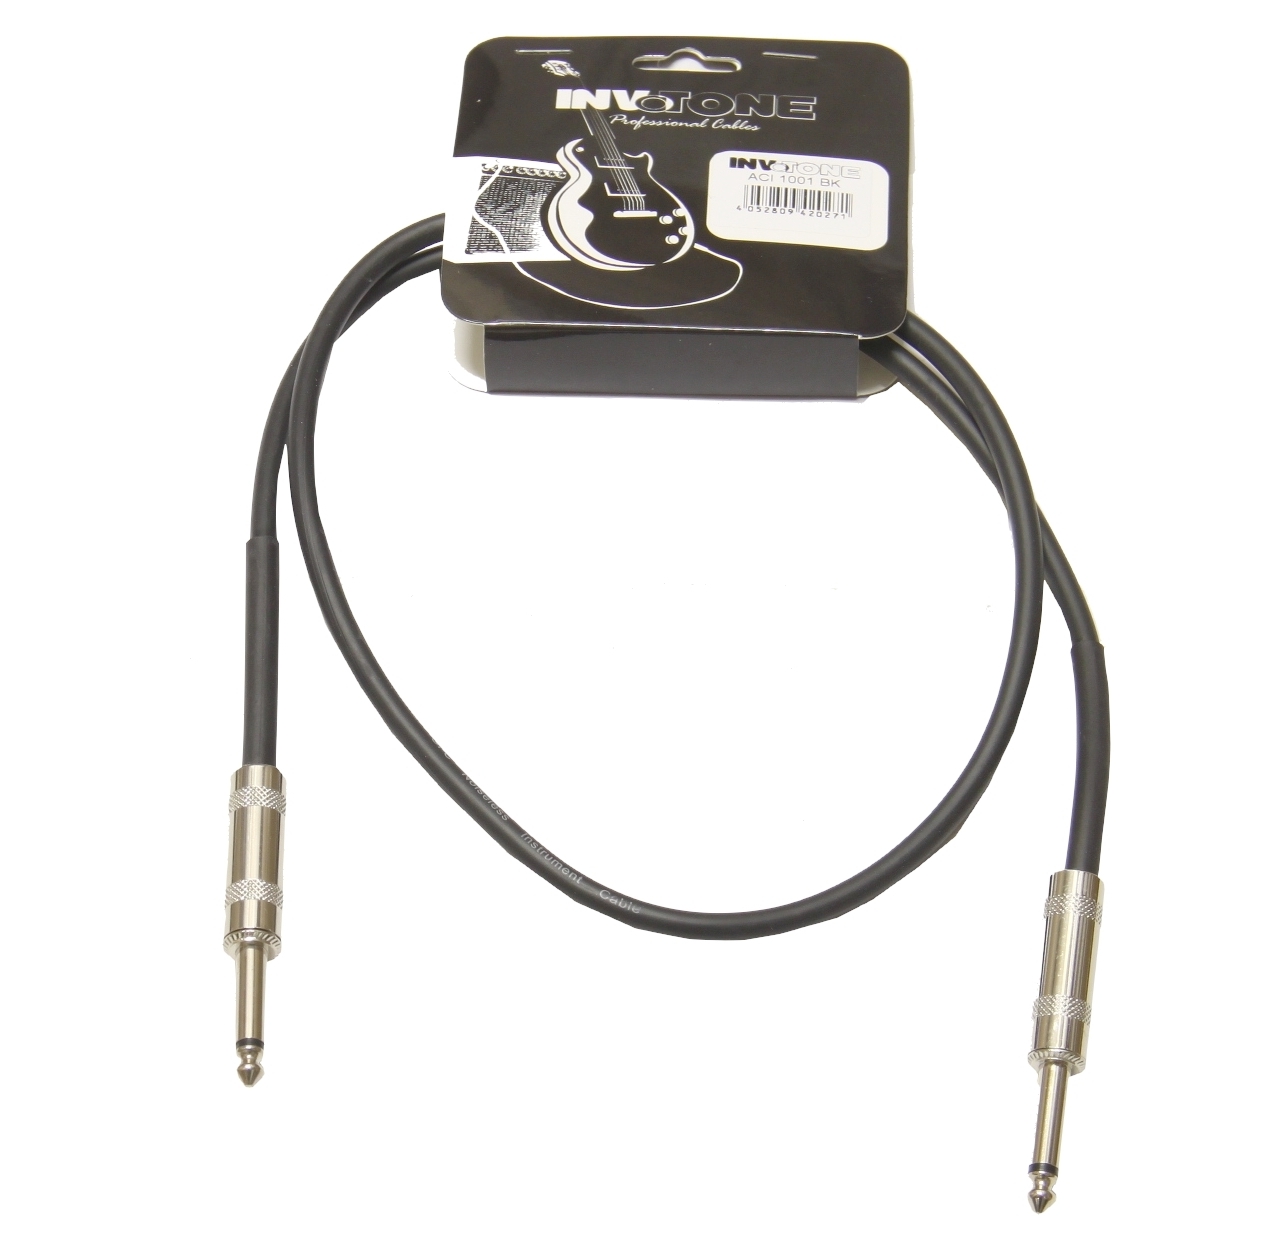 Кабель джек-джек INVOTONE ACI1001/BK - инструментальный кабель, 6,3 джек моно <-> 6,3 джек моно, дли